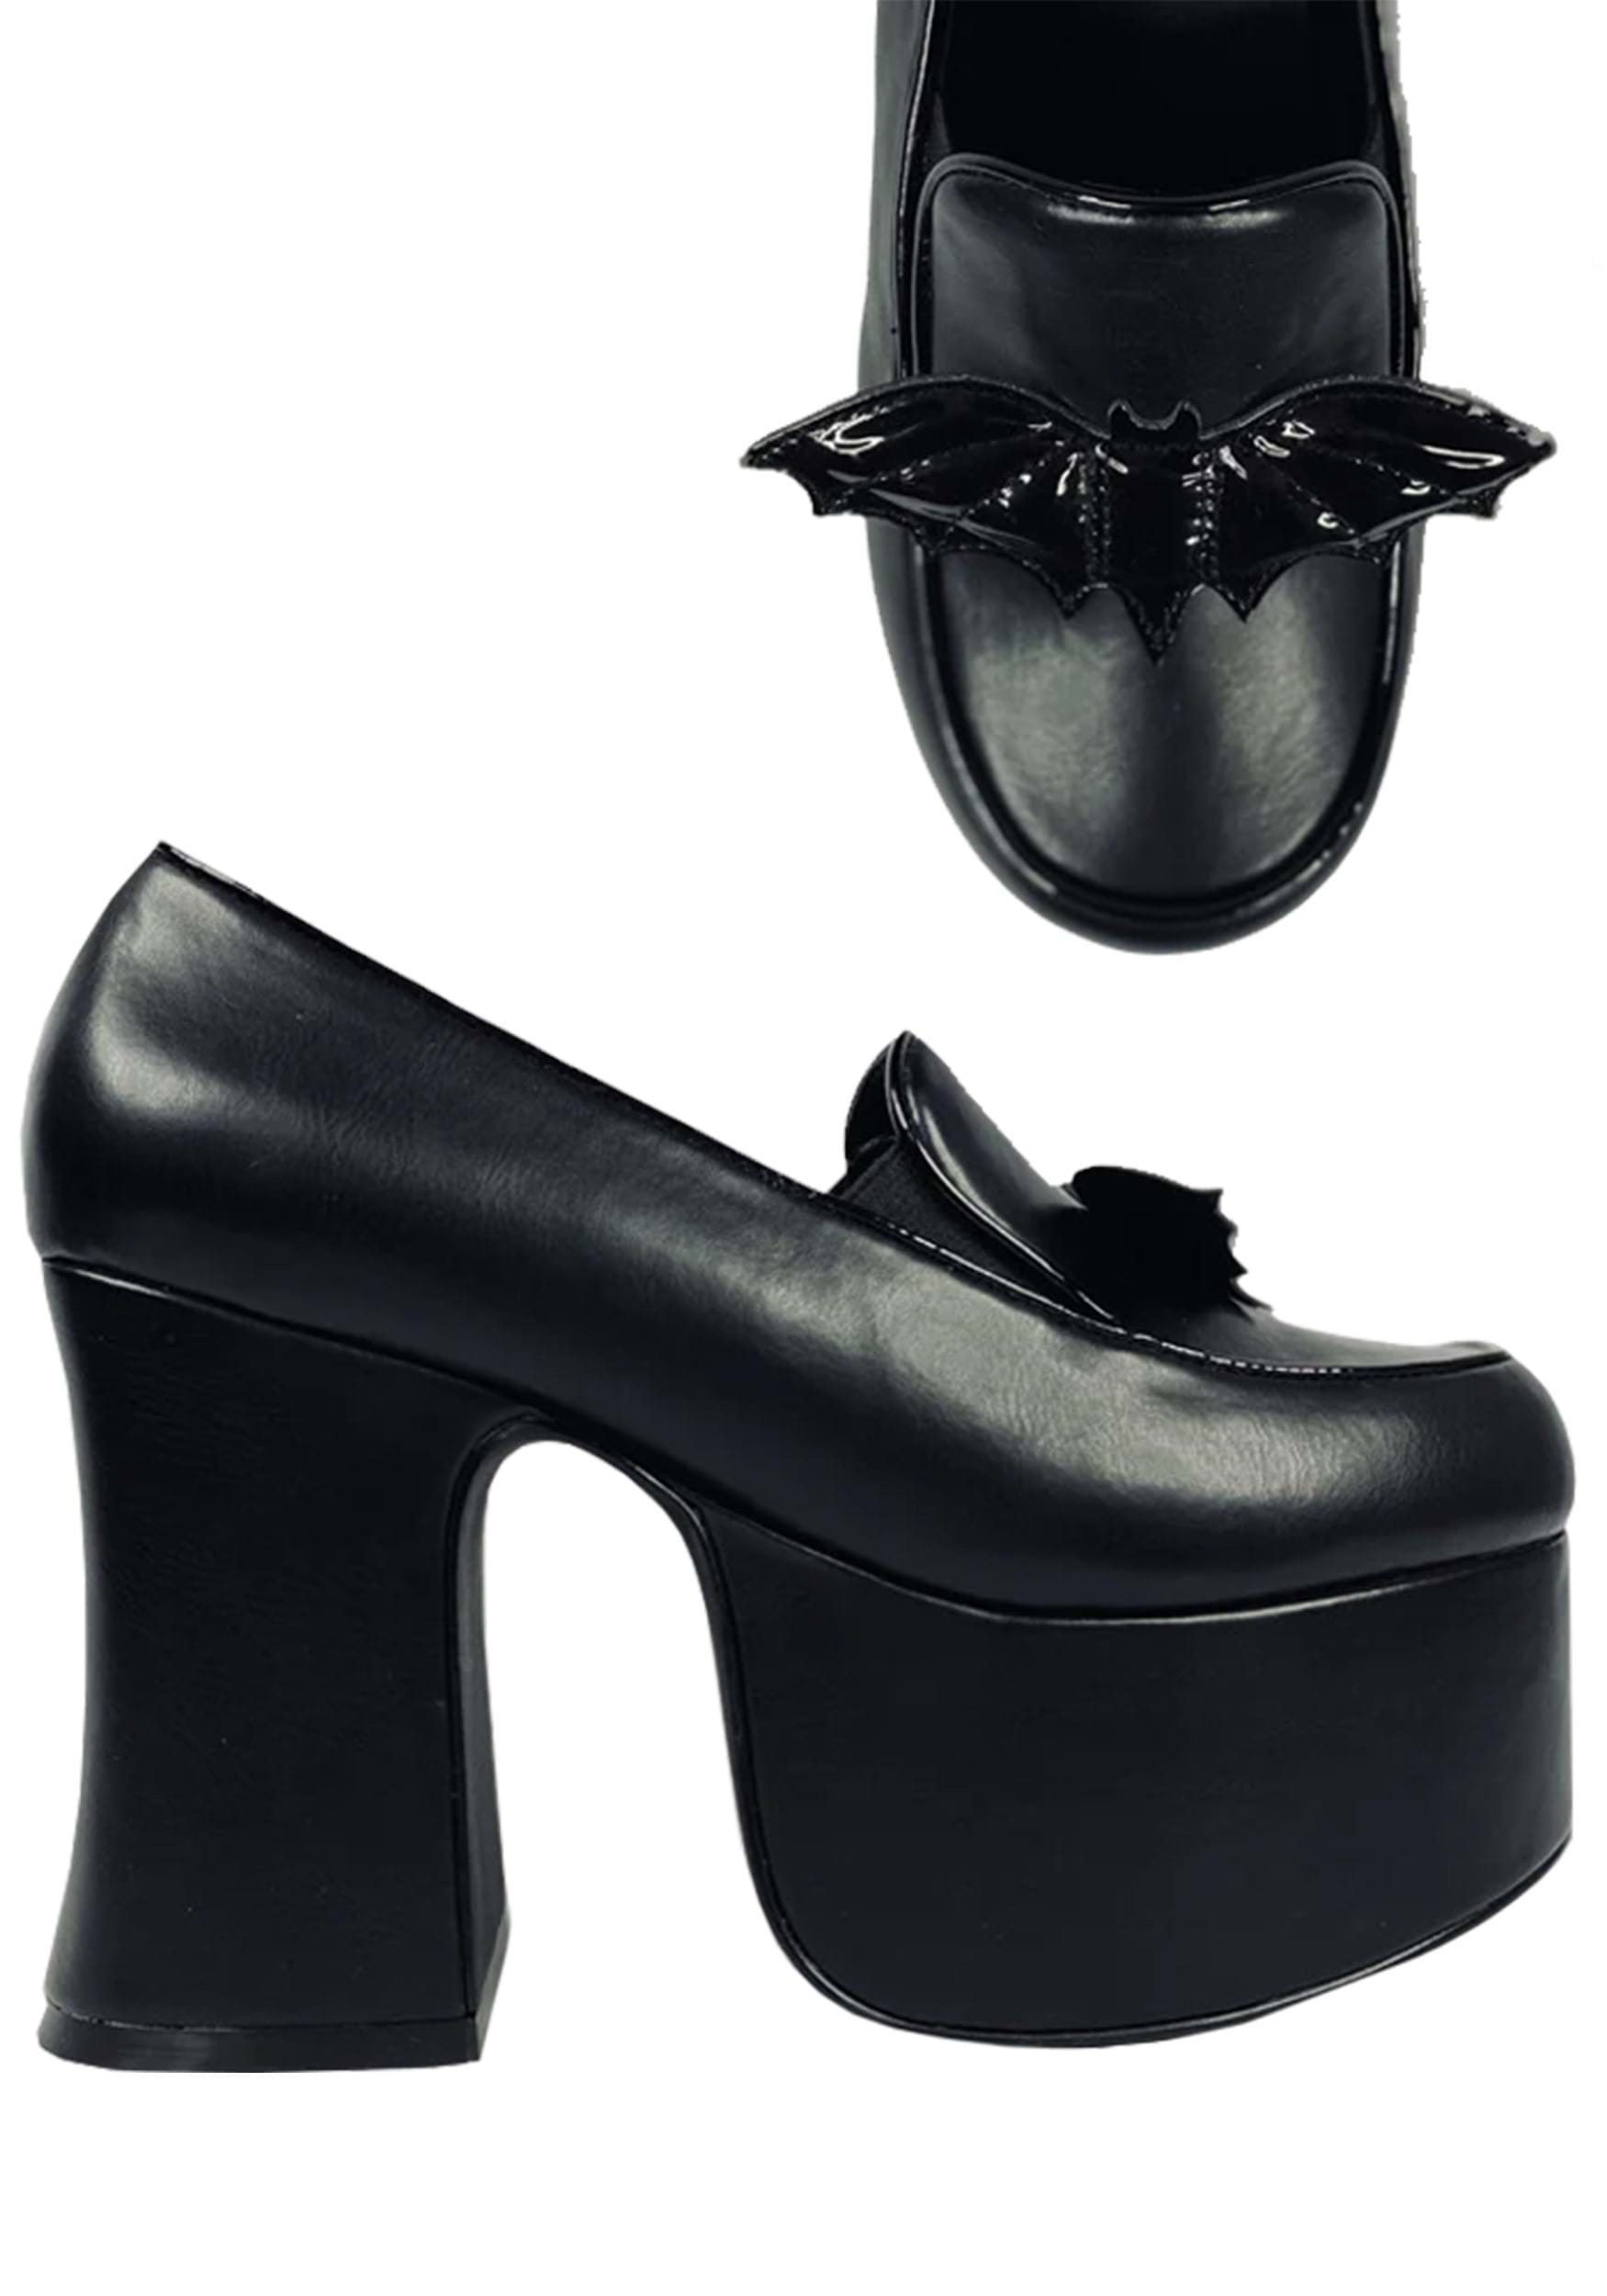 Image of Platform Bat Banshee Heels for Women ID SVBANSHEEHEEL-BAT-9